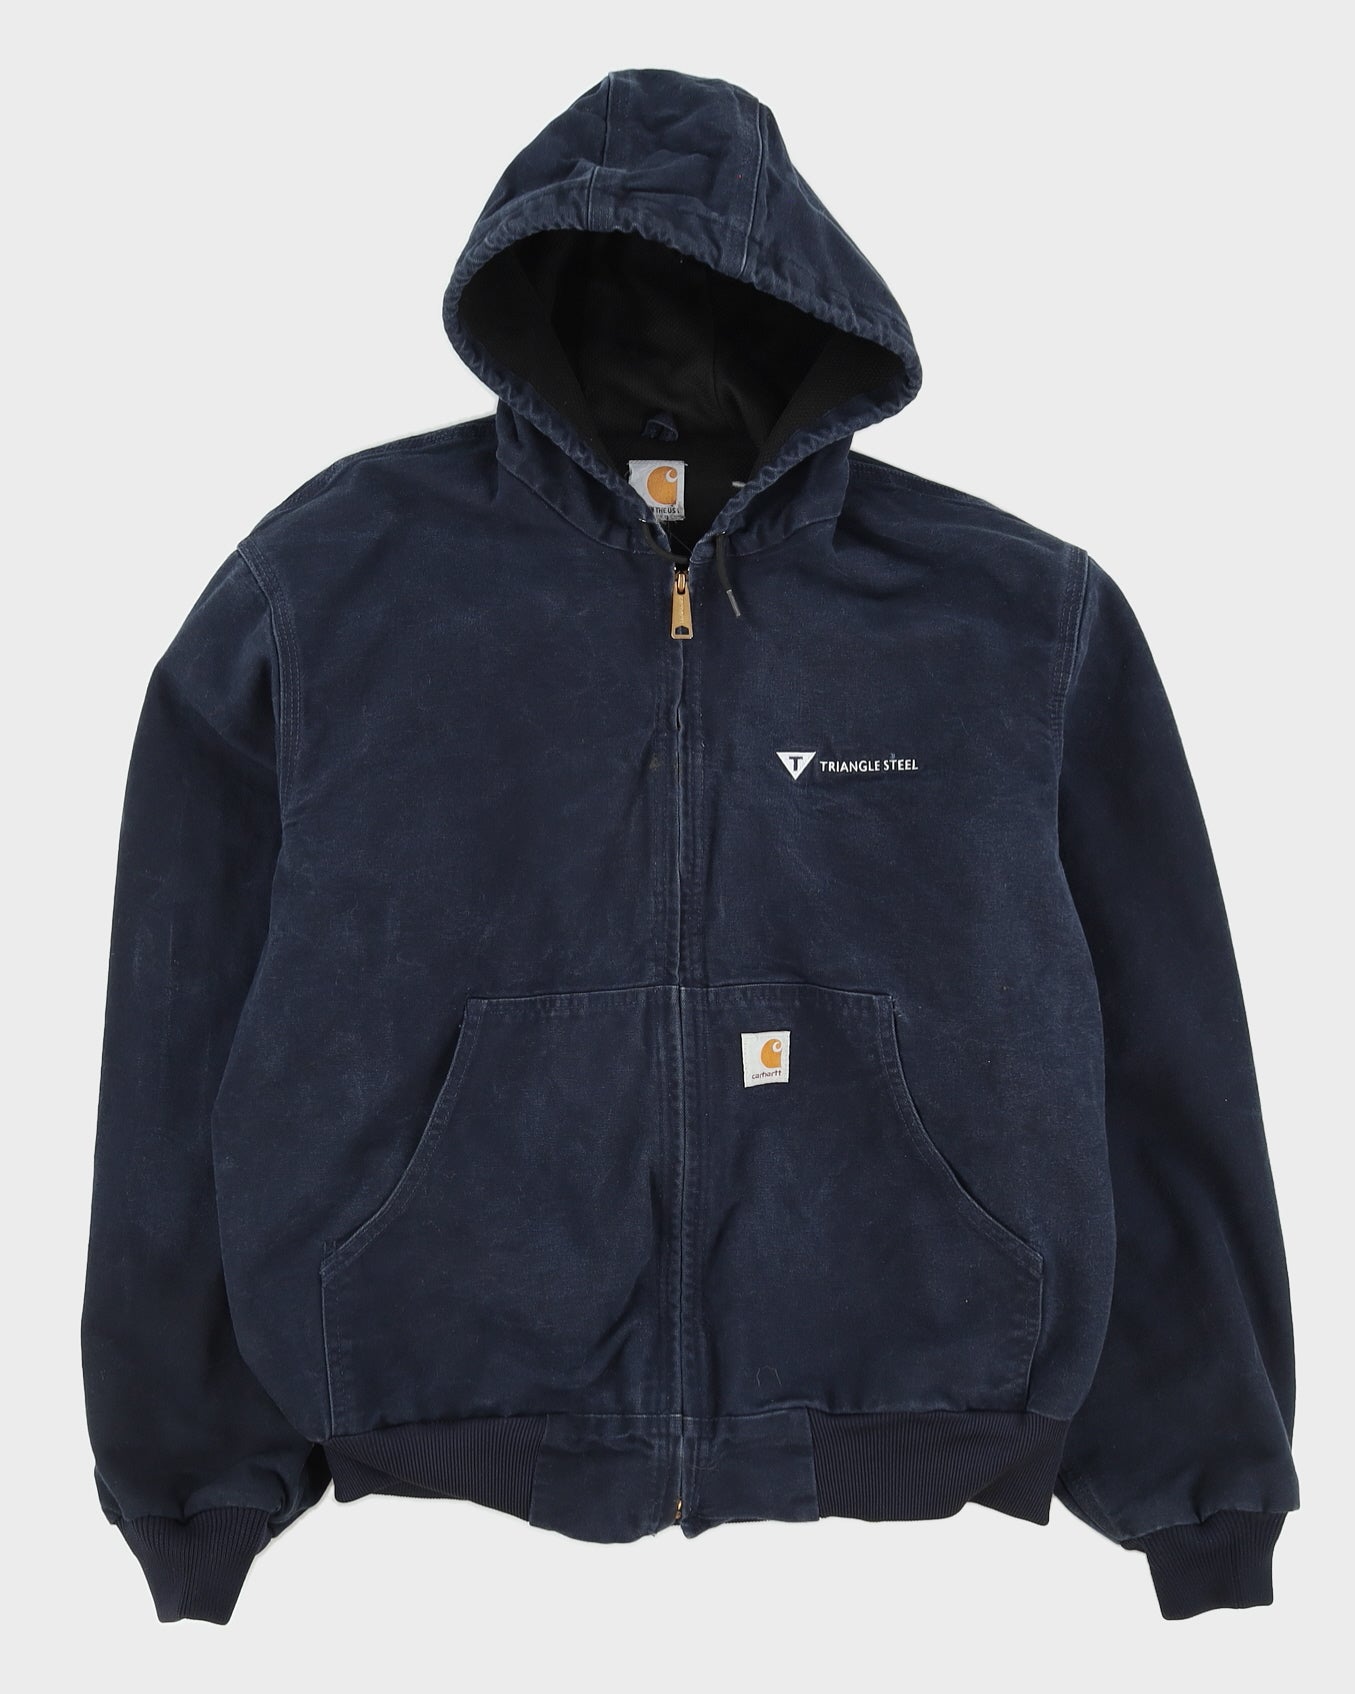 Carhartt Blue Workwear Hooded Fleece Lined Jacket - L